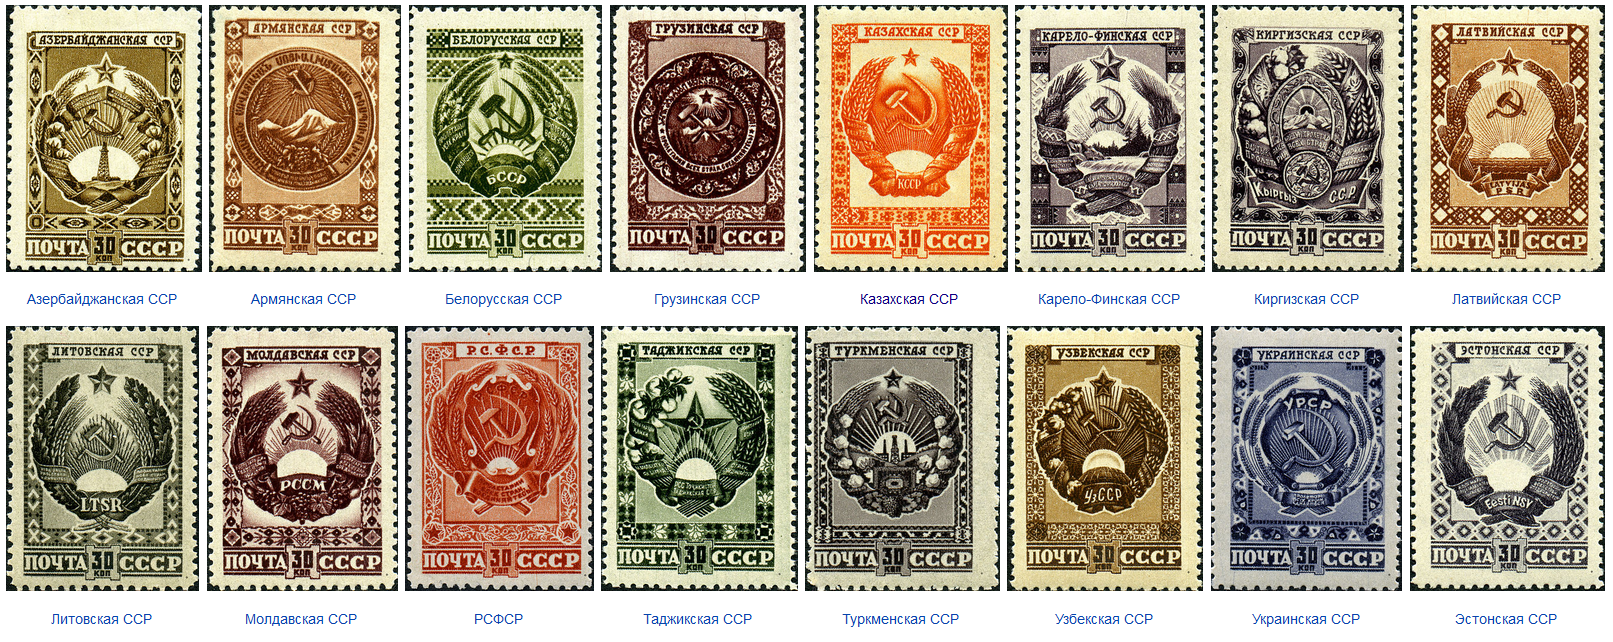 Poštne znamke z emblemi vseh sovjetskih republik